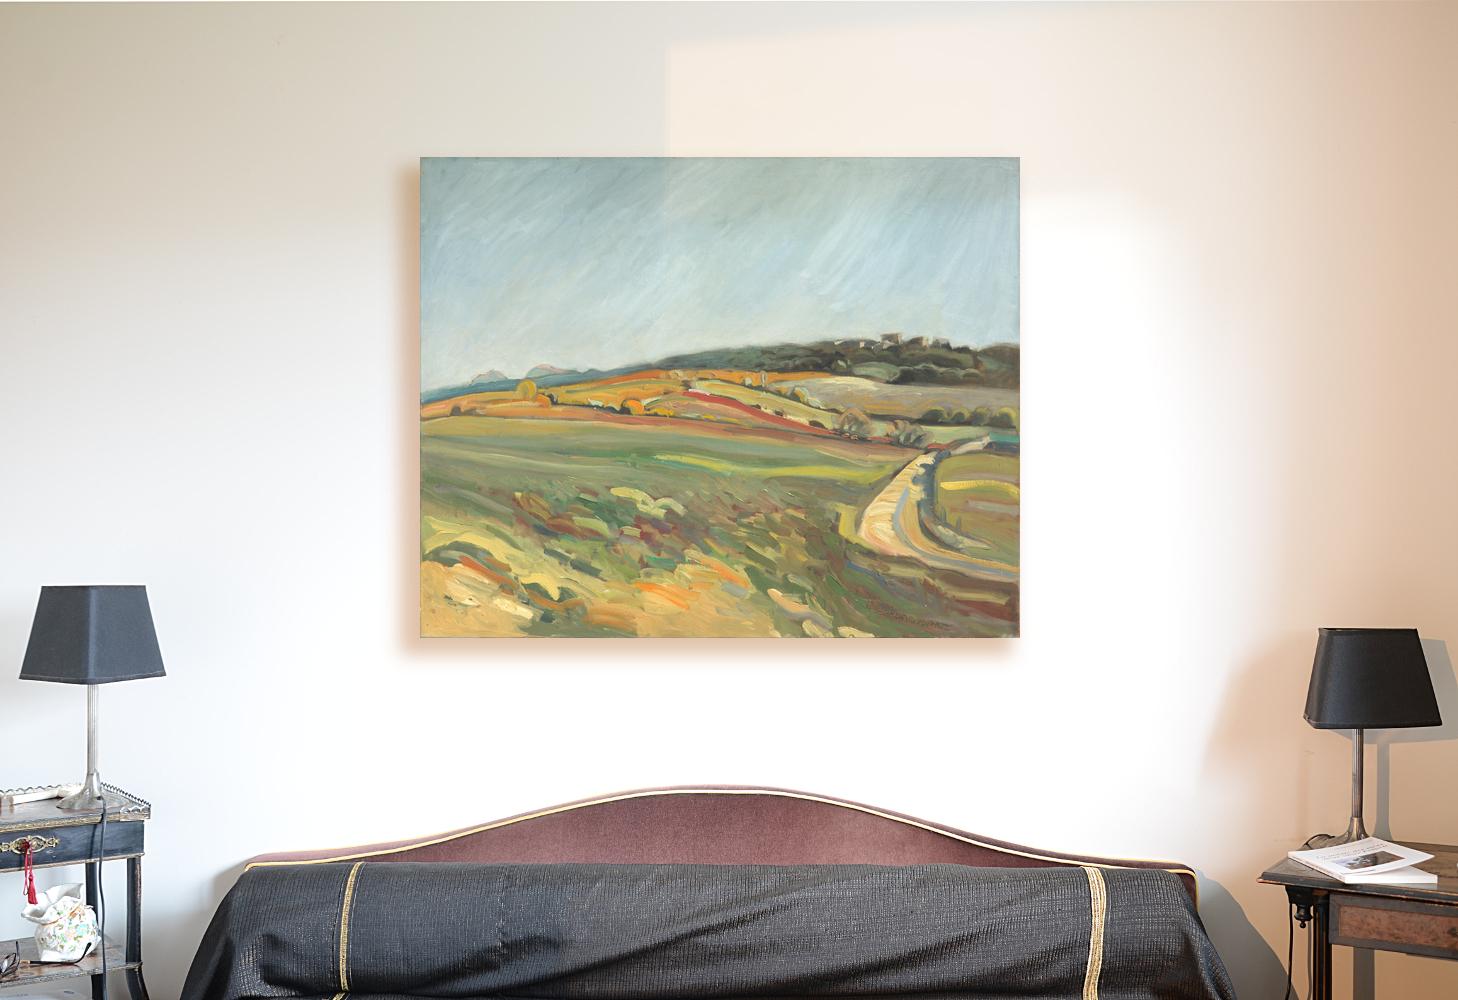 Peinture à l'huile impressionniste de paysage rural « From the Field to the Red Hill » (De la terre au terrain rouge) - Painting de Yves Calméjane